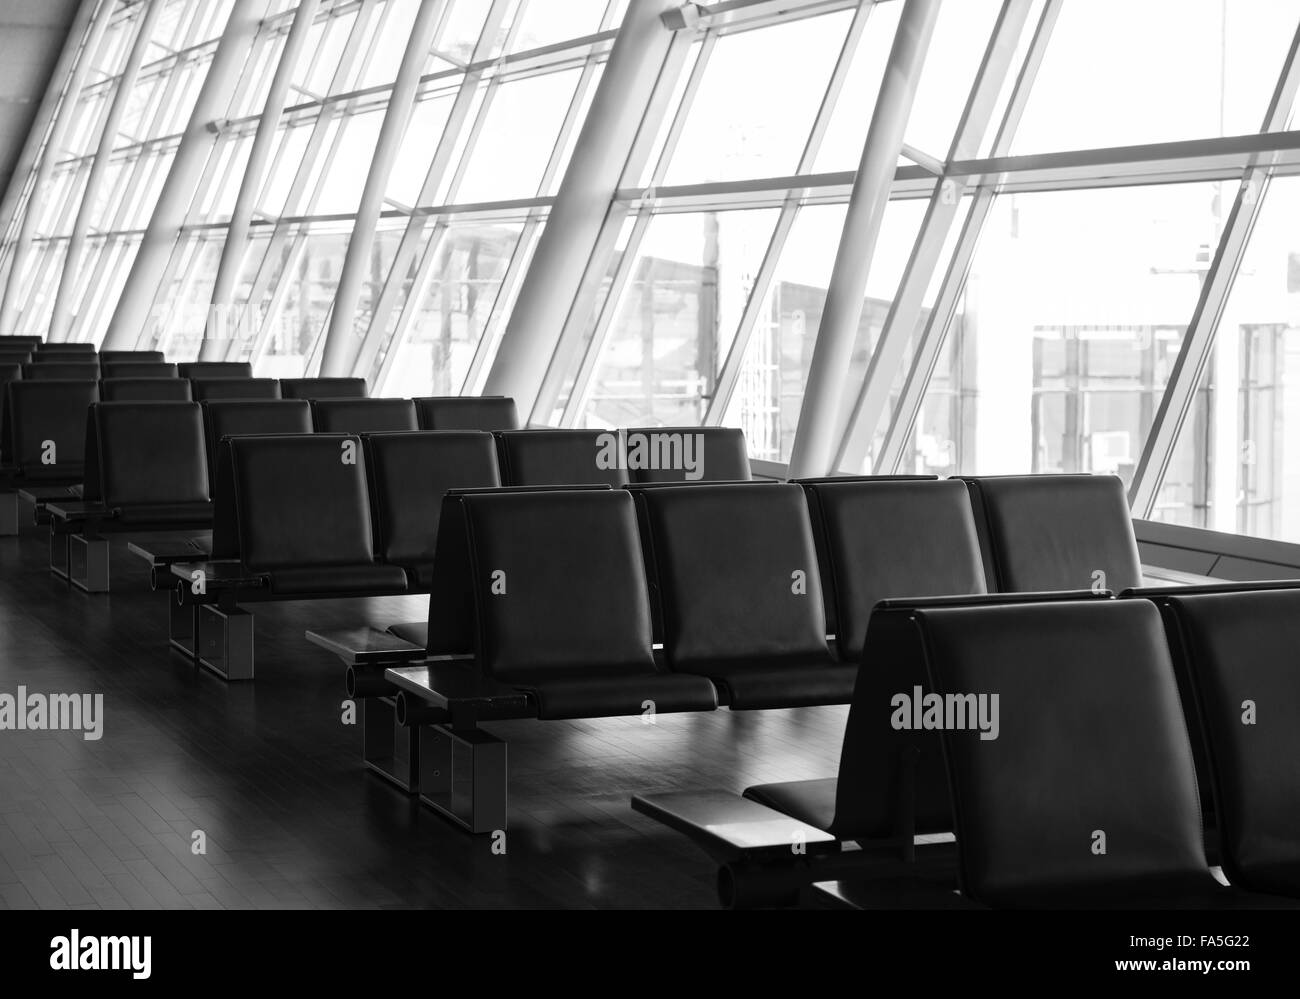 Sitzreihe in einem Flughafen terminal Stockfoto